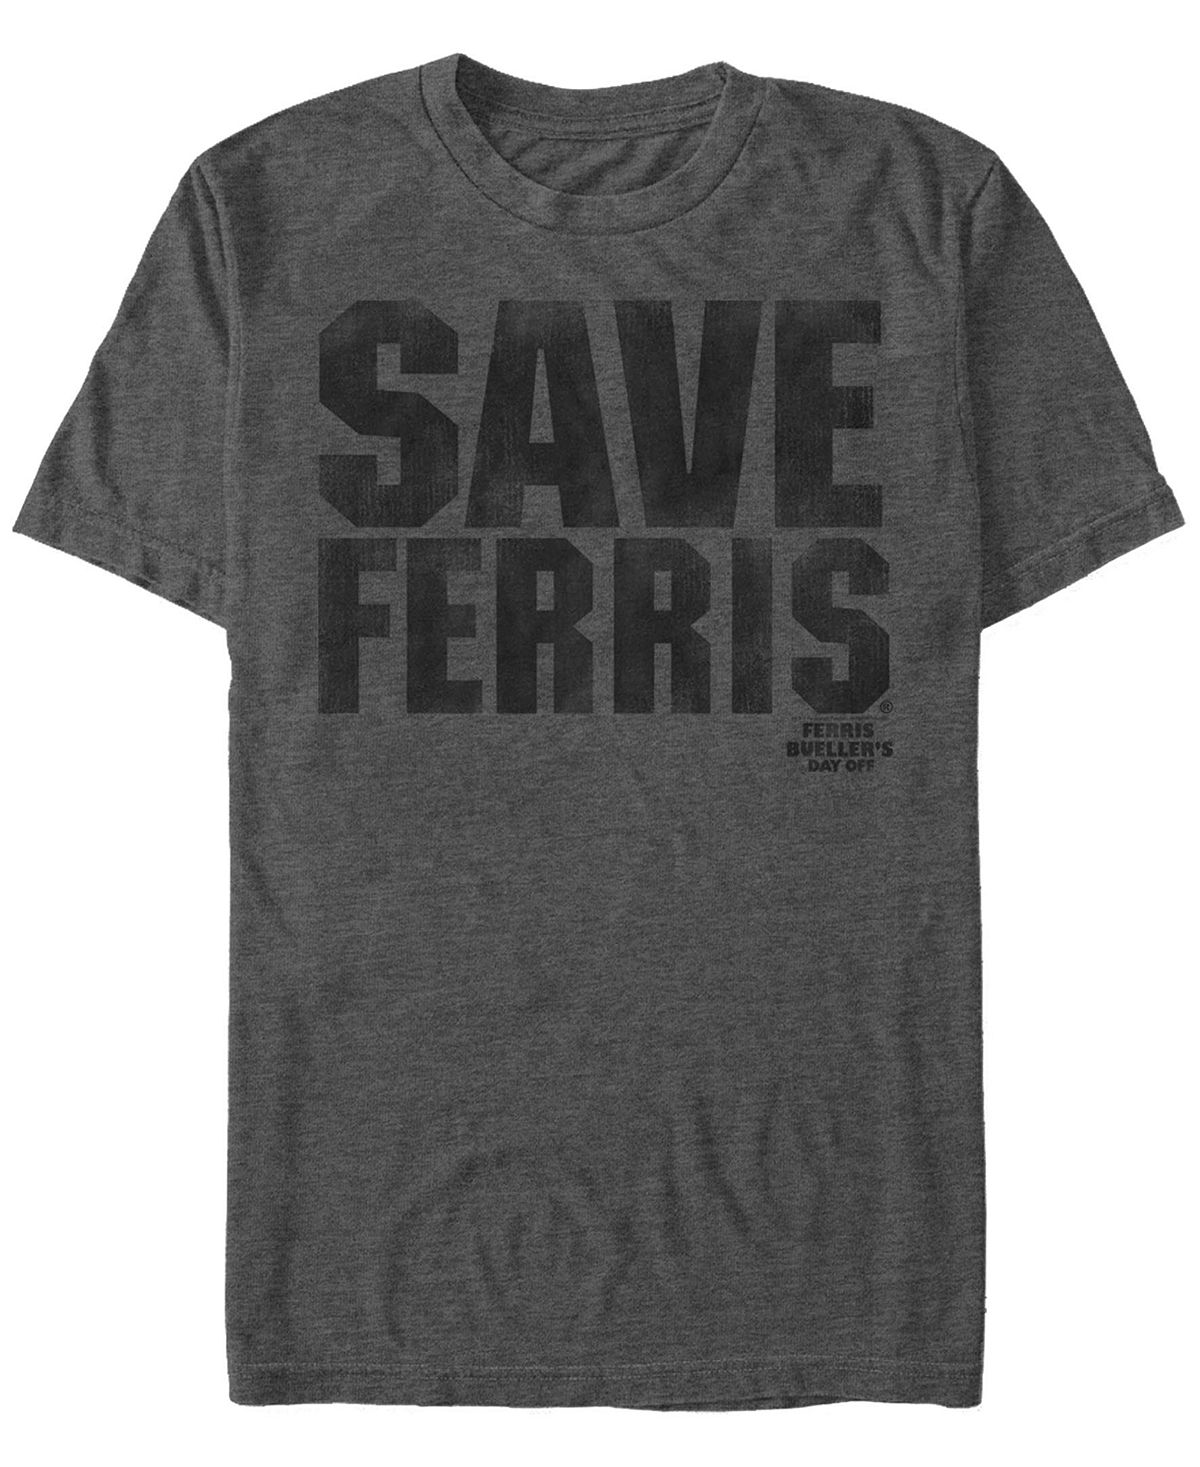 цена Мужская футболка с коротким рукавом save ferris text с эффектом потертости Fifth Sun, темно-серый